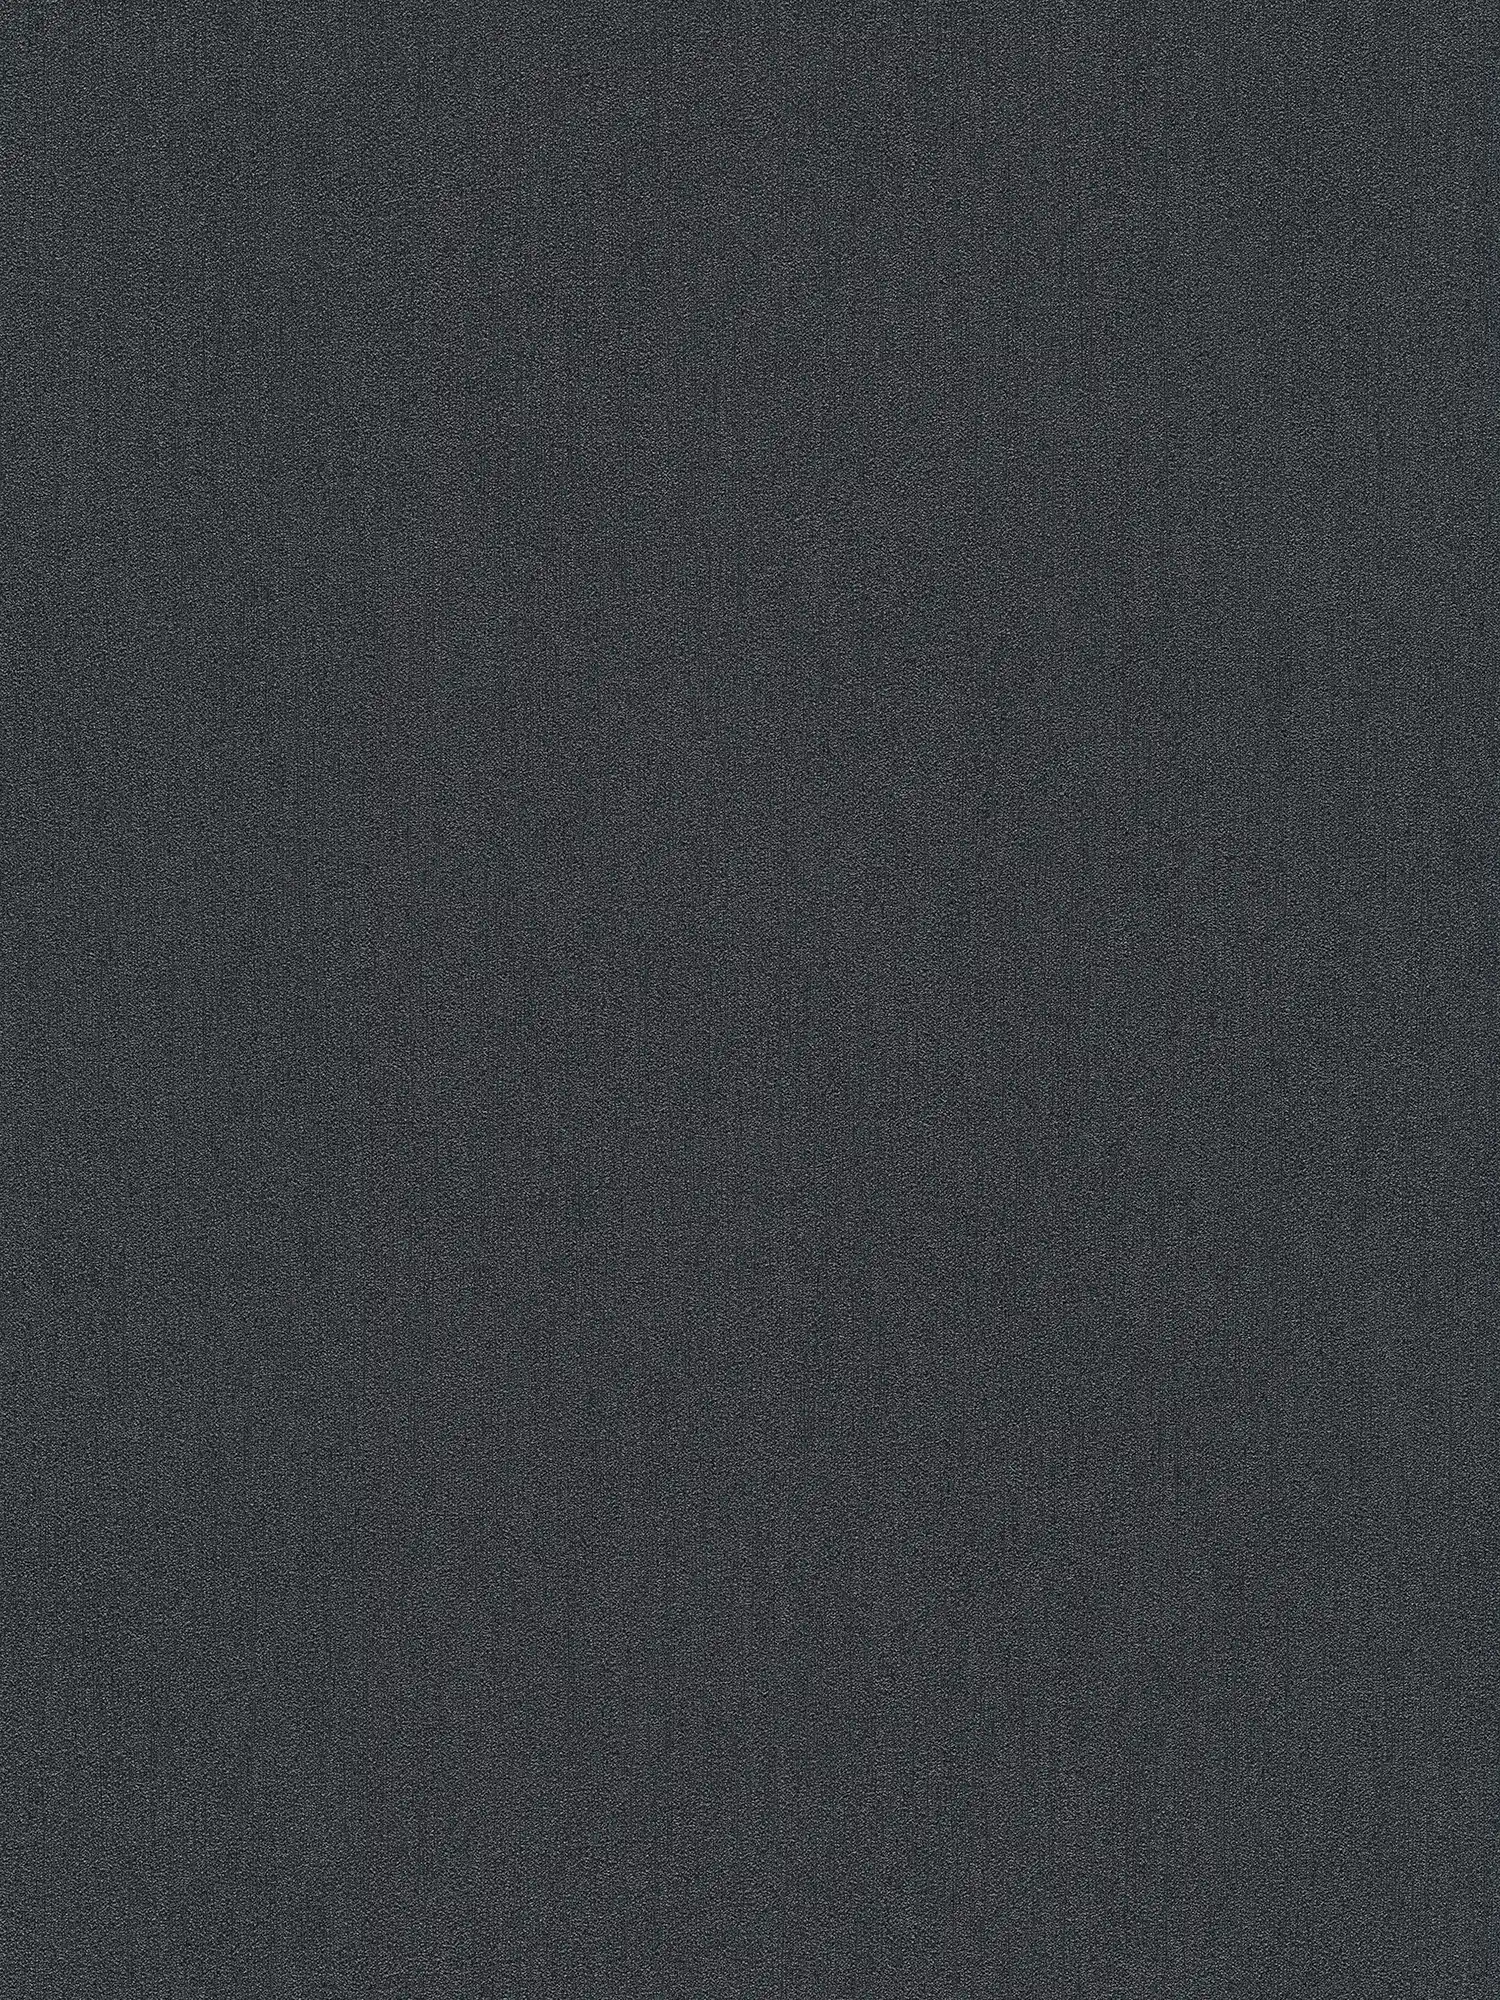 Karl LAGERFELD Carta da parati in tessuto non tessuto tinta unita e texture - nero
